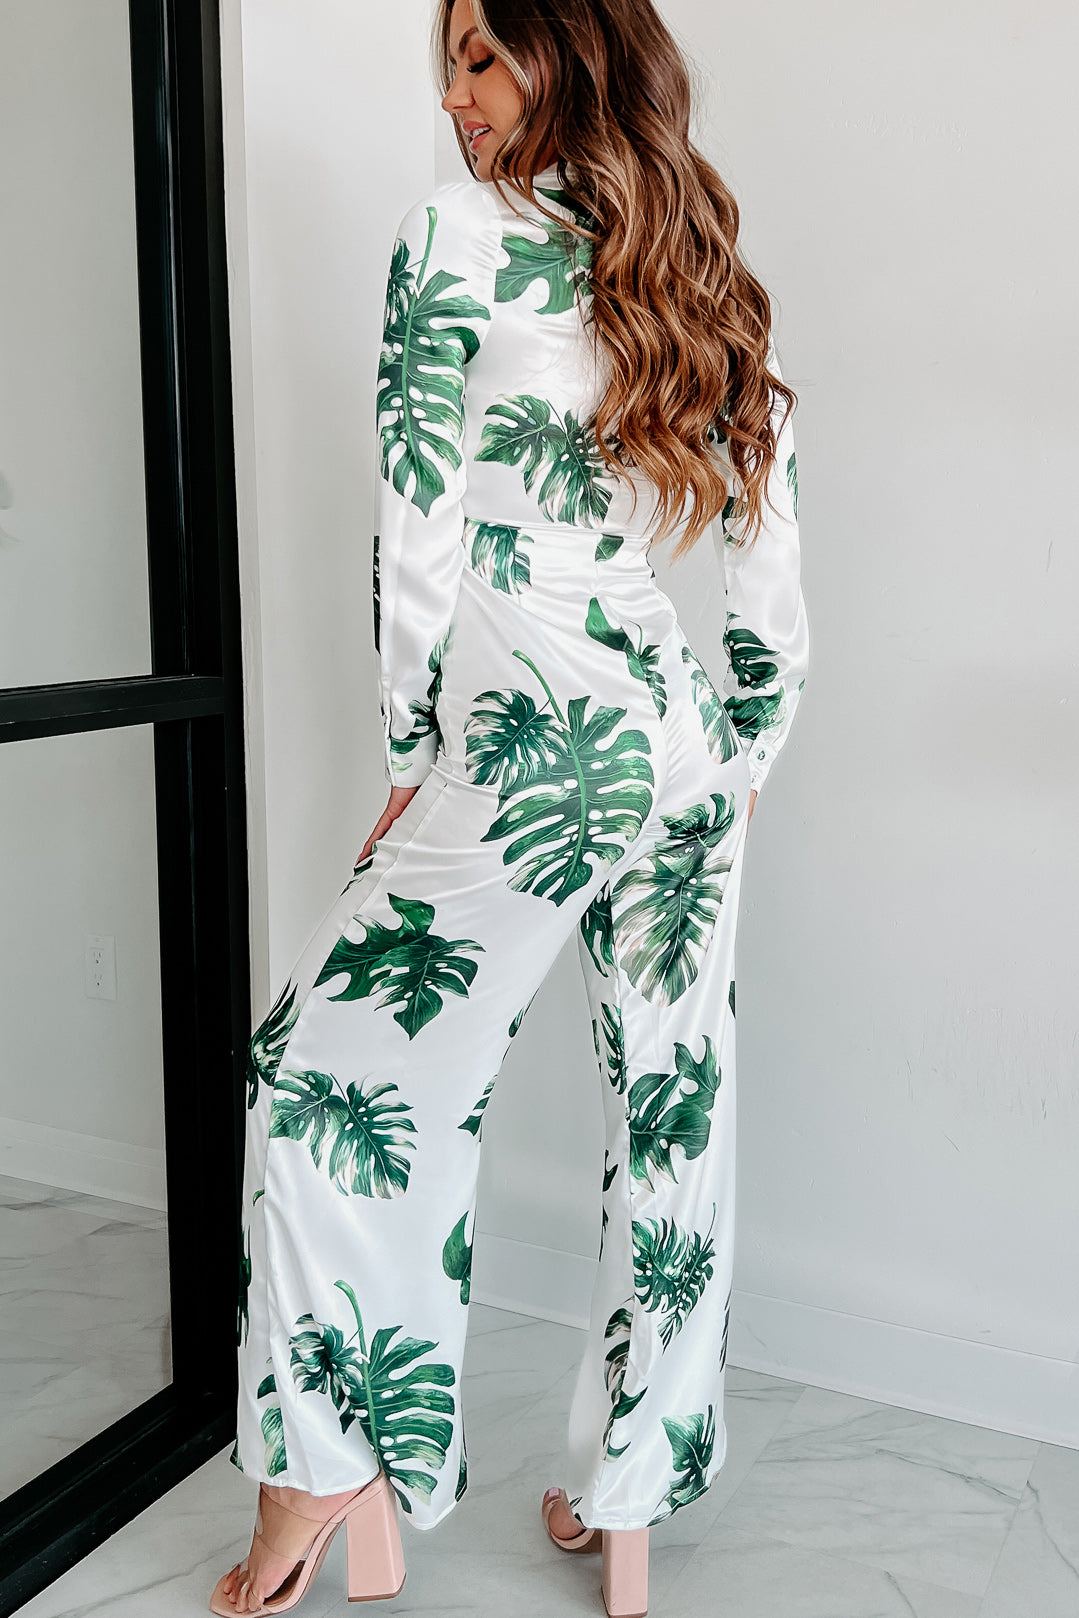 Green Palm Leaf Printed Mesh Bodysuit